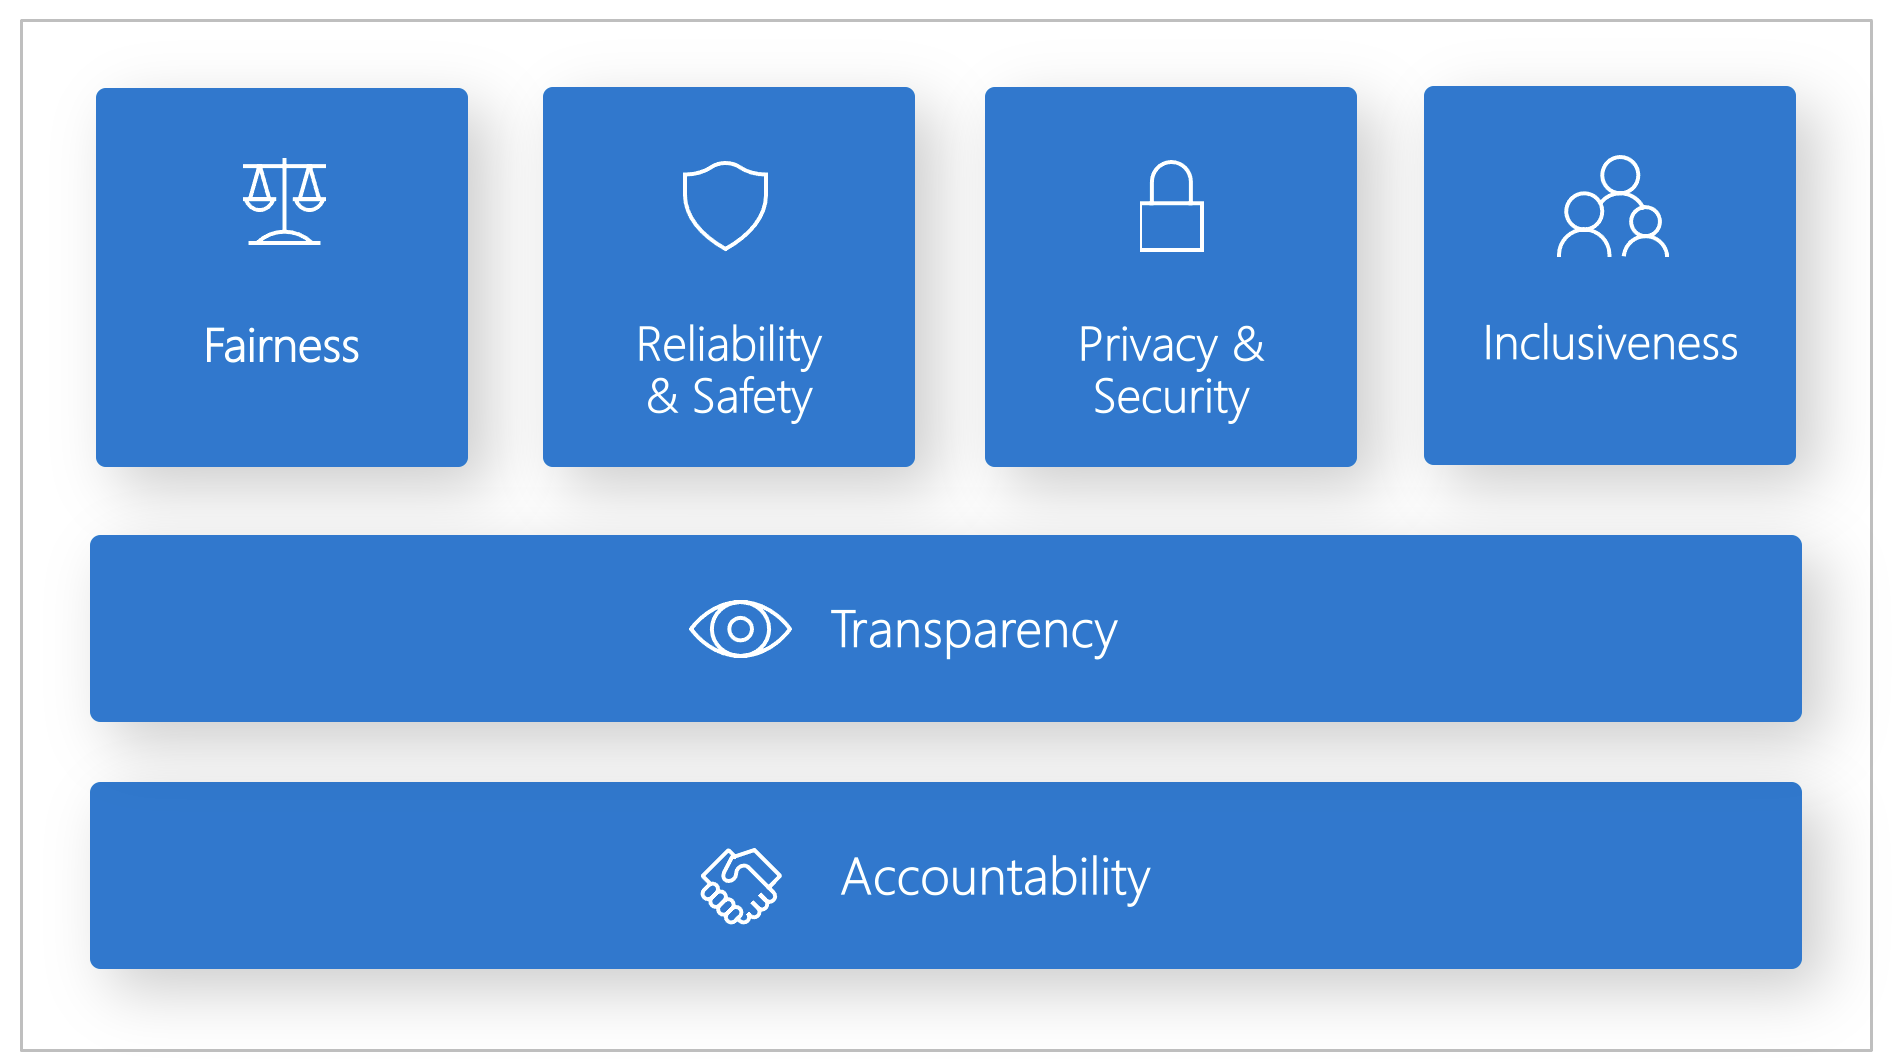 Схема: шесть принципов ответственного ИИ от Майкрософт — справедливость, надежность и защищенность, конфиденциальность и безопасность, инклюзивность, прозрачность и подотчетность.